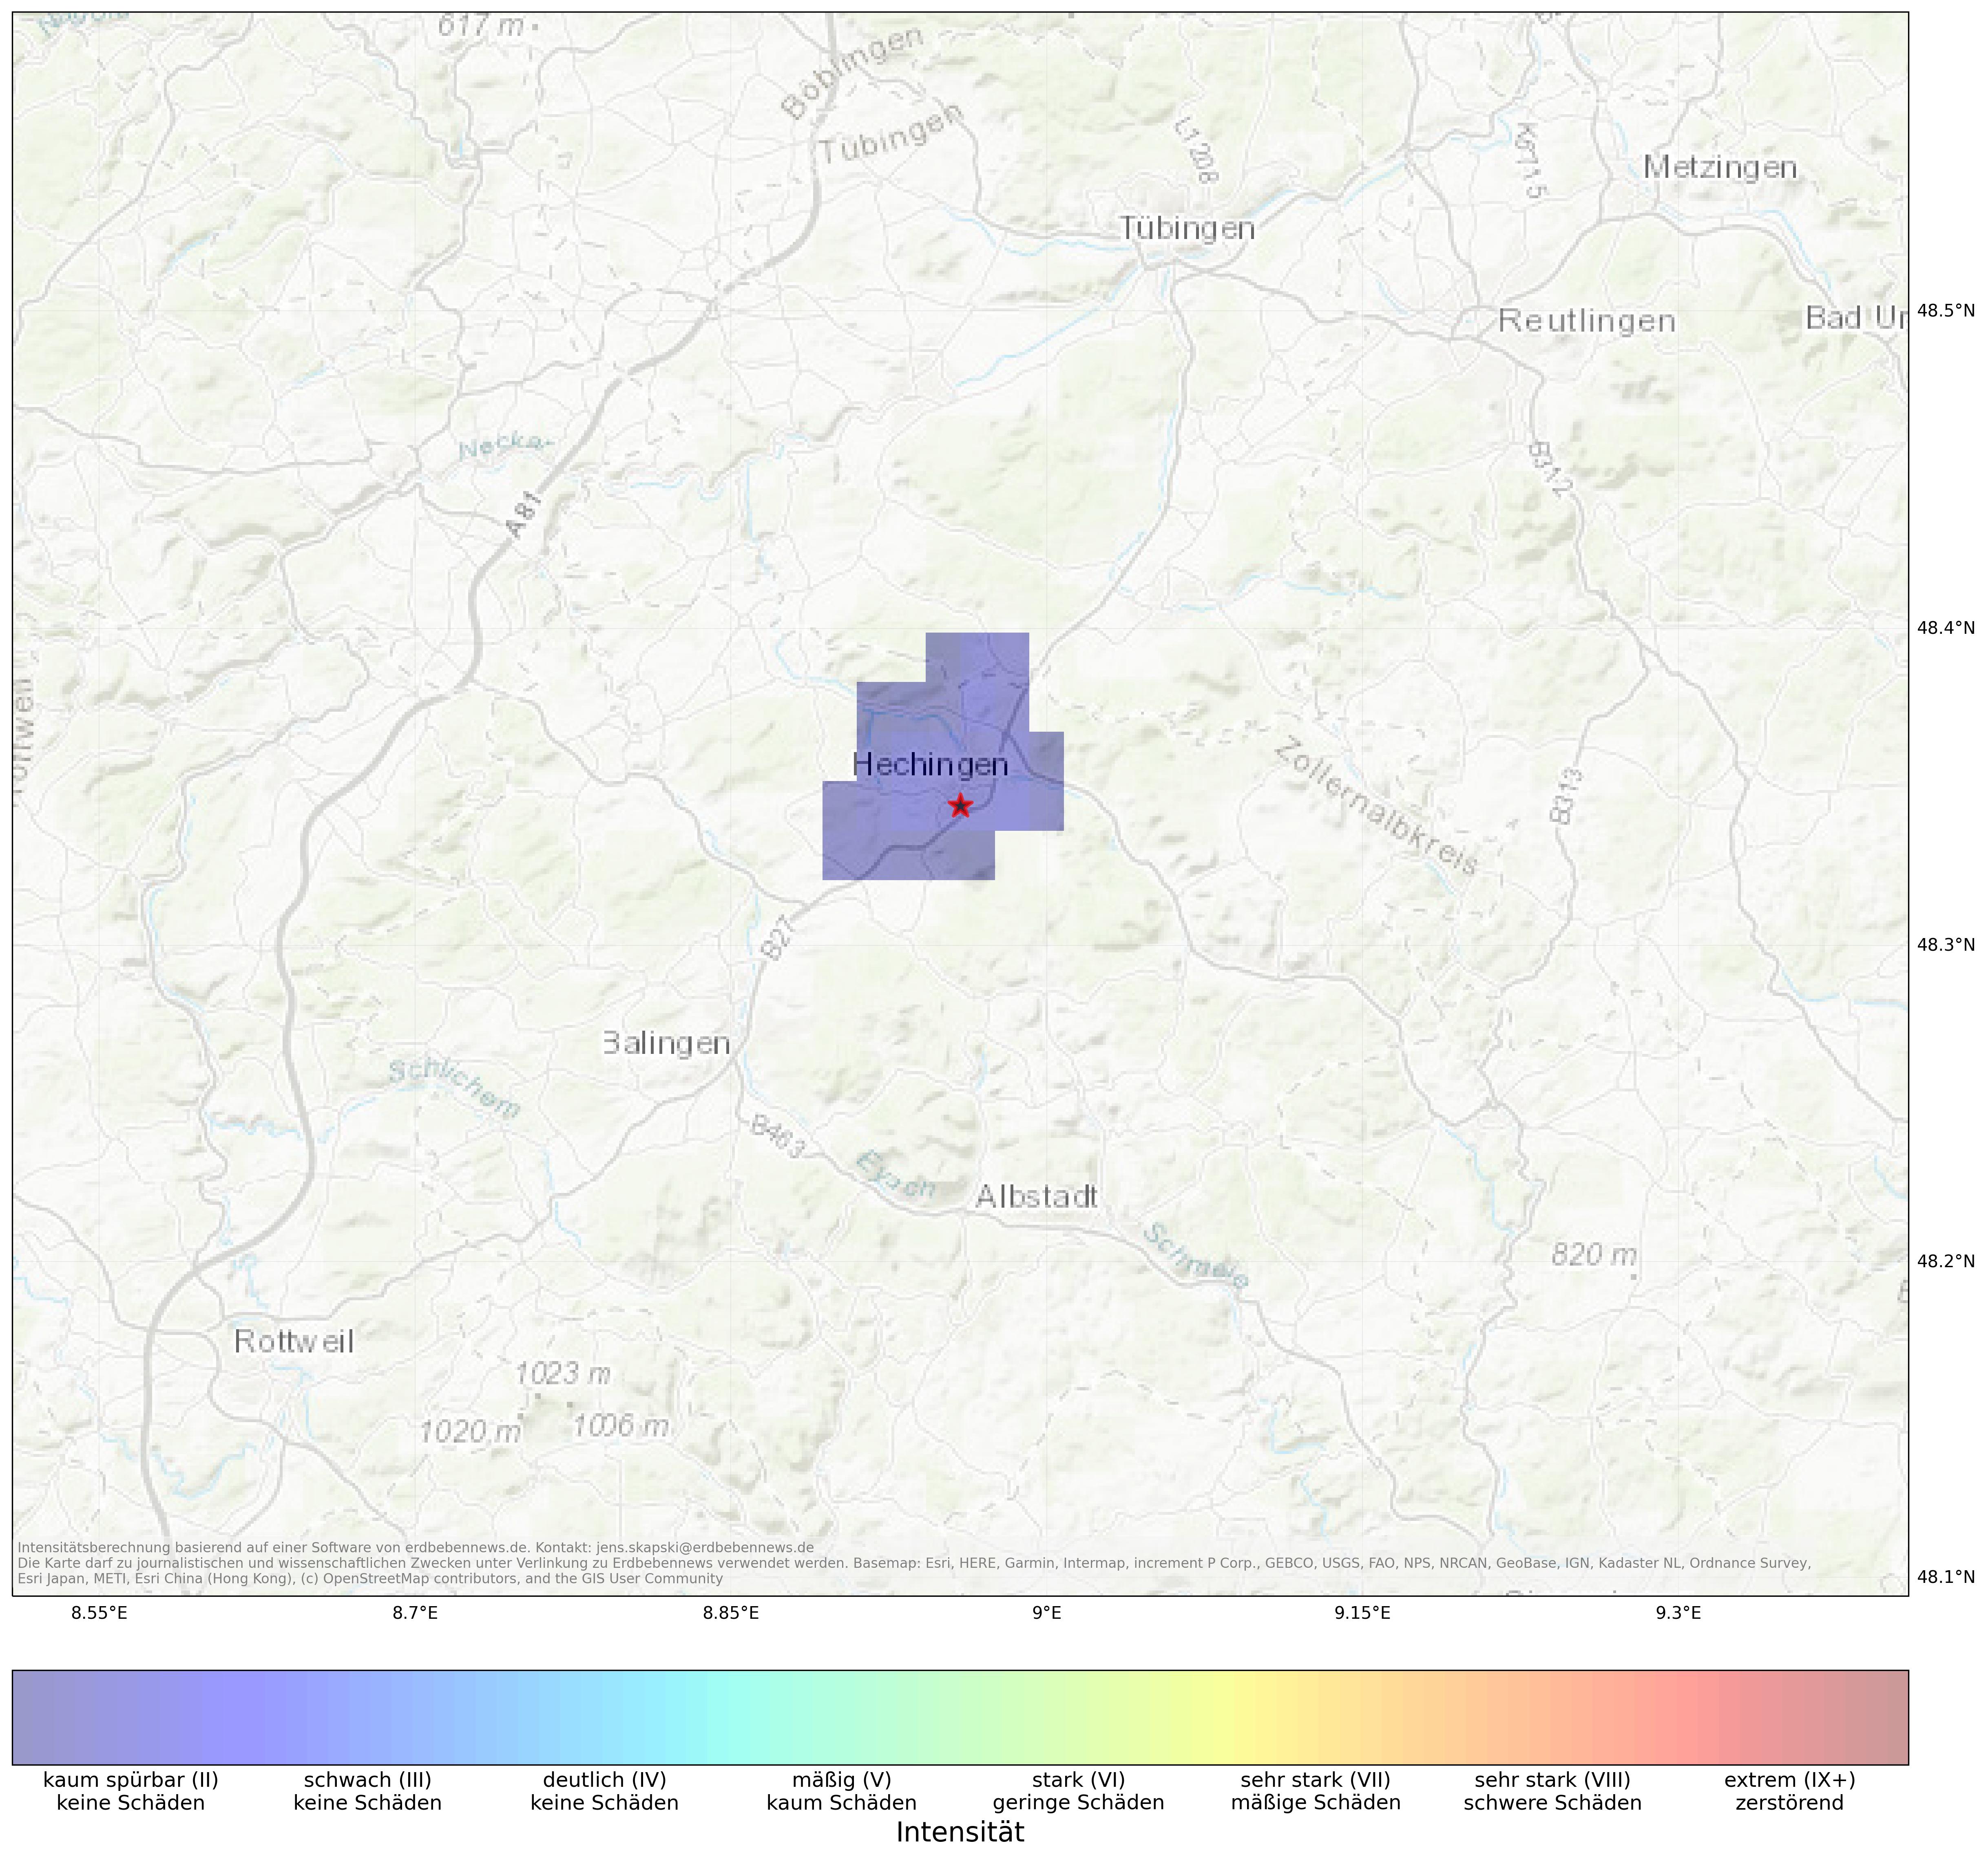 Berechnete Intensität (ShakeMap) des Erdbebens der Stärke 2.0 am 12. April, 20:34 in Deutschland